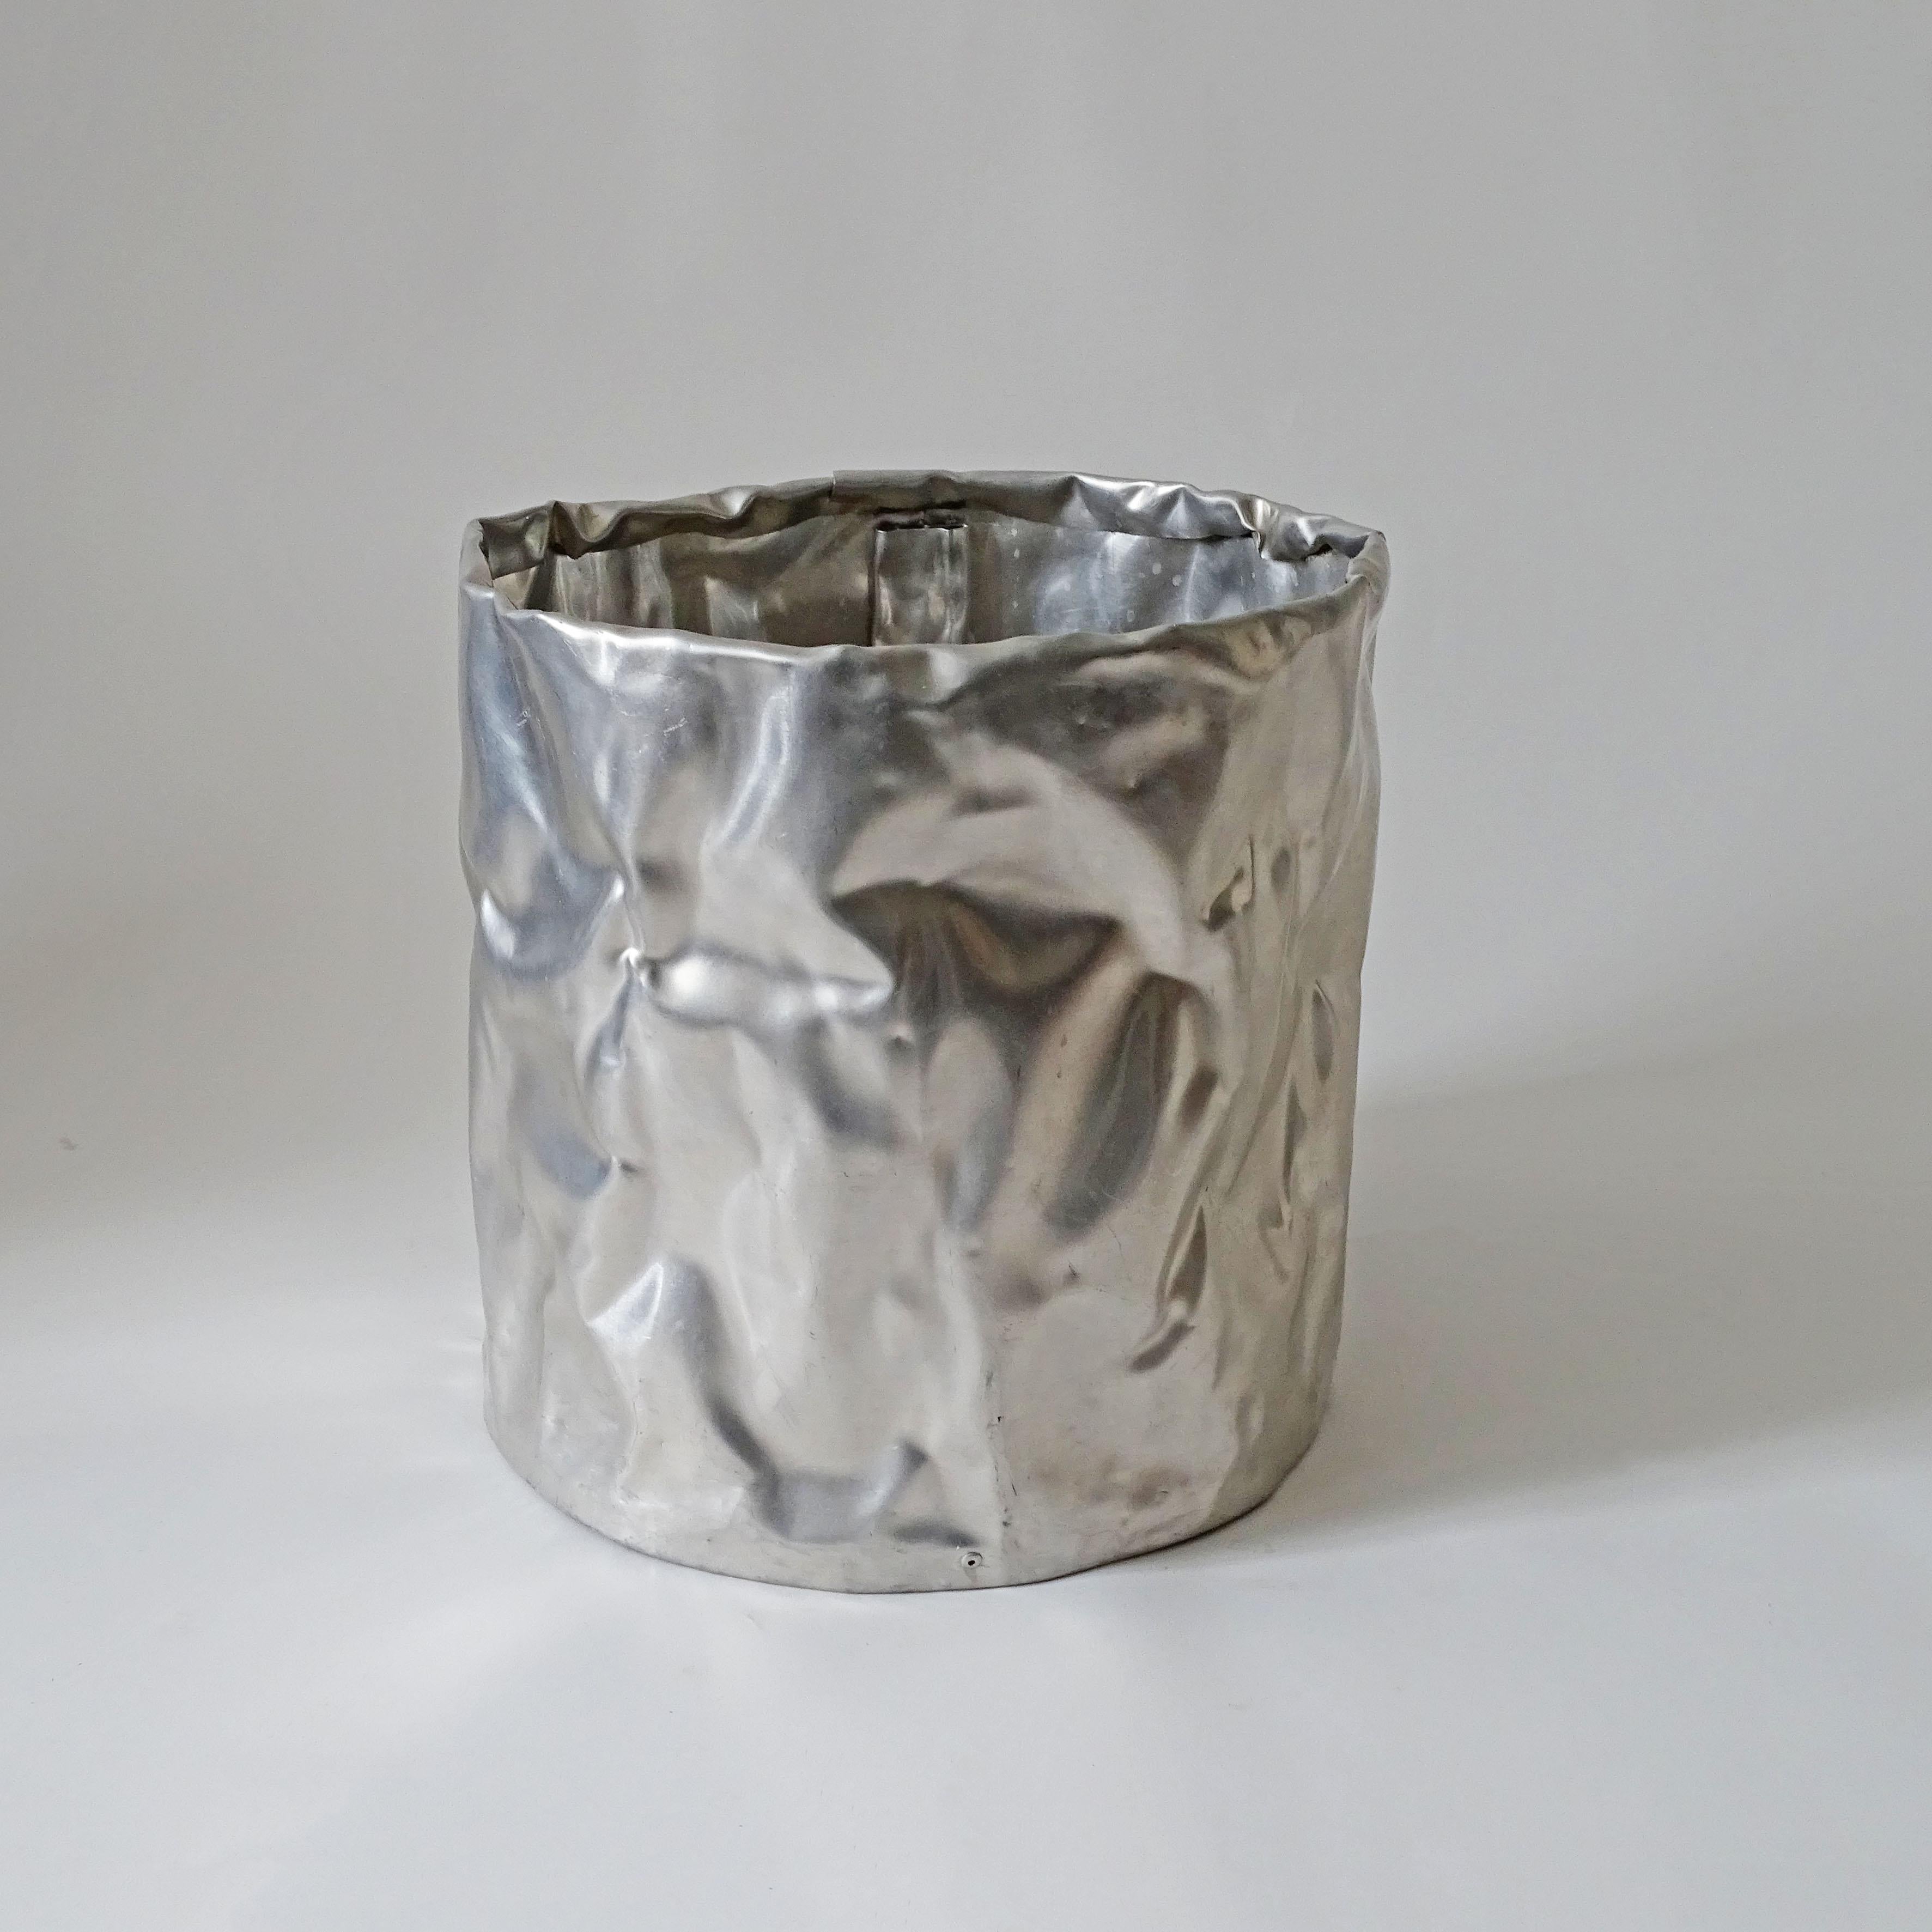 Ein genieteter, gehämmerter und geformter Papierkorb aus Aluminiumblech.
Ähnlich wie die Werke von Shlomo Harush.